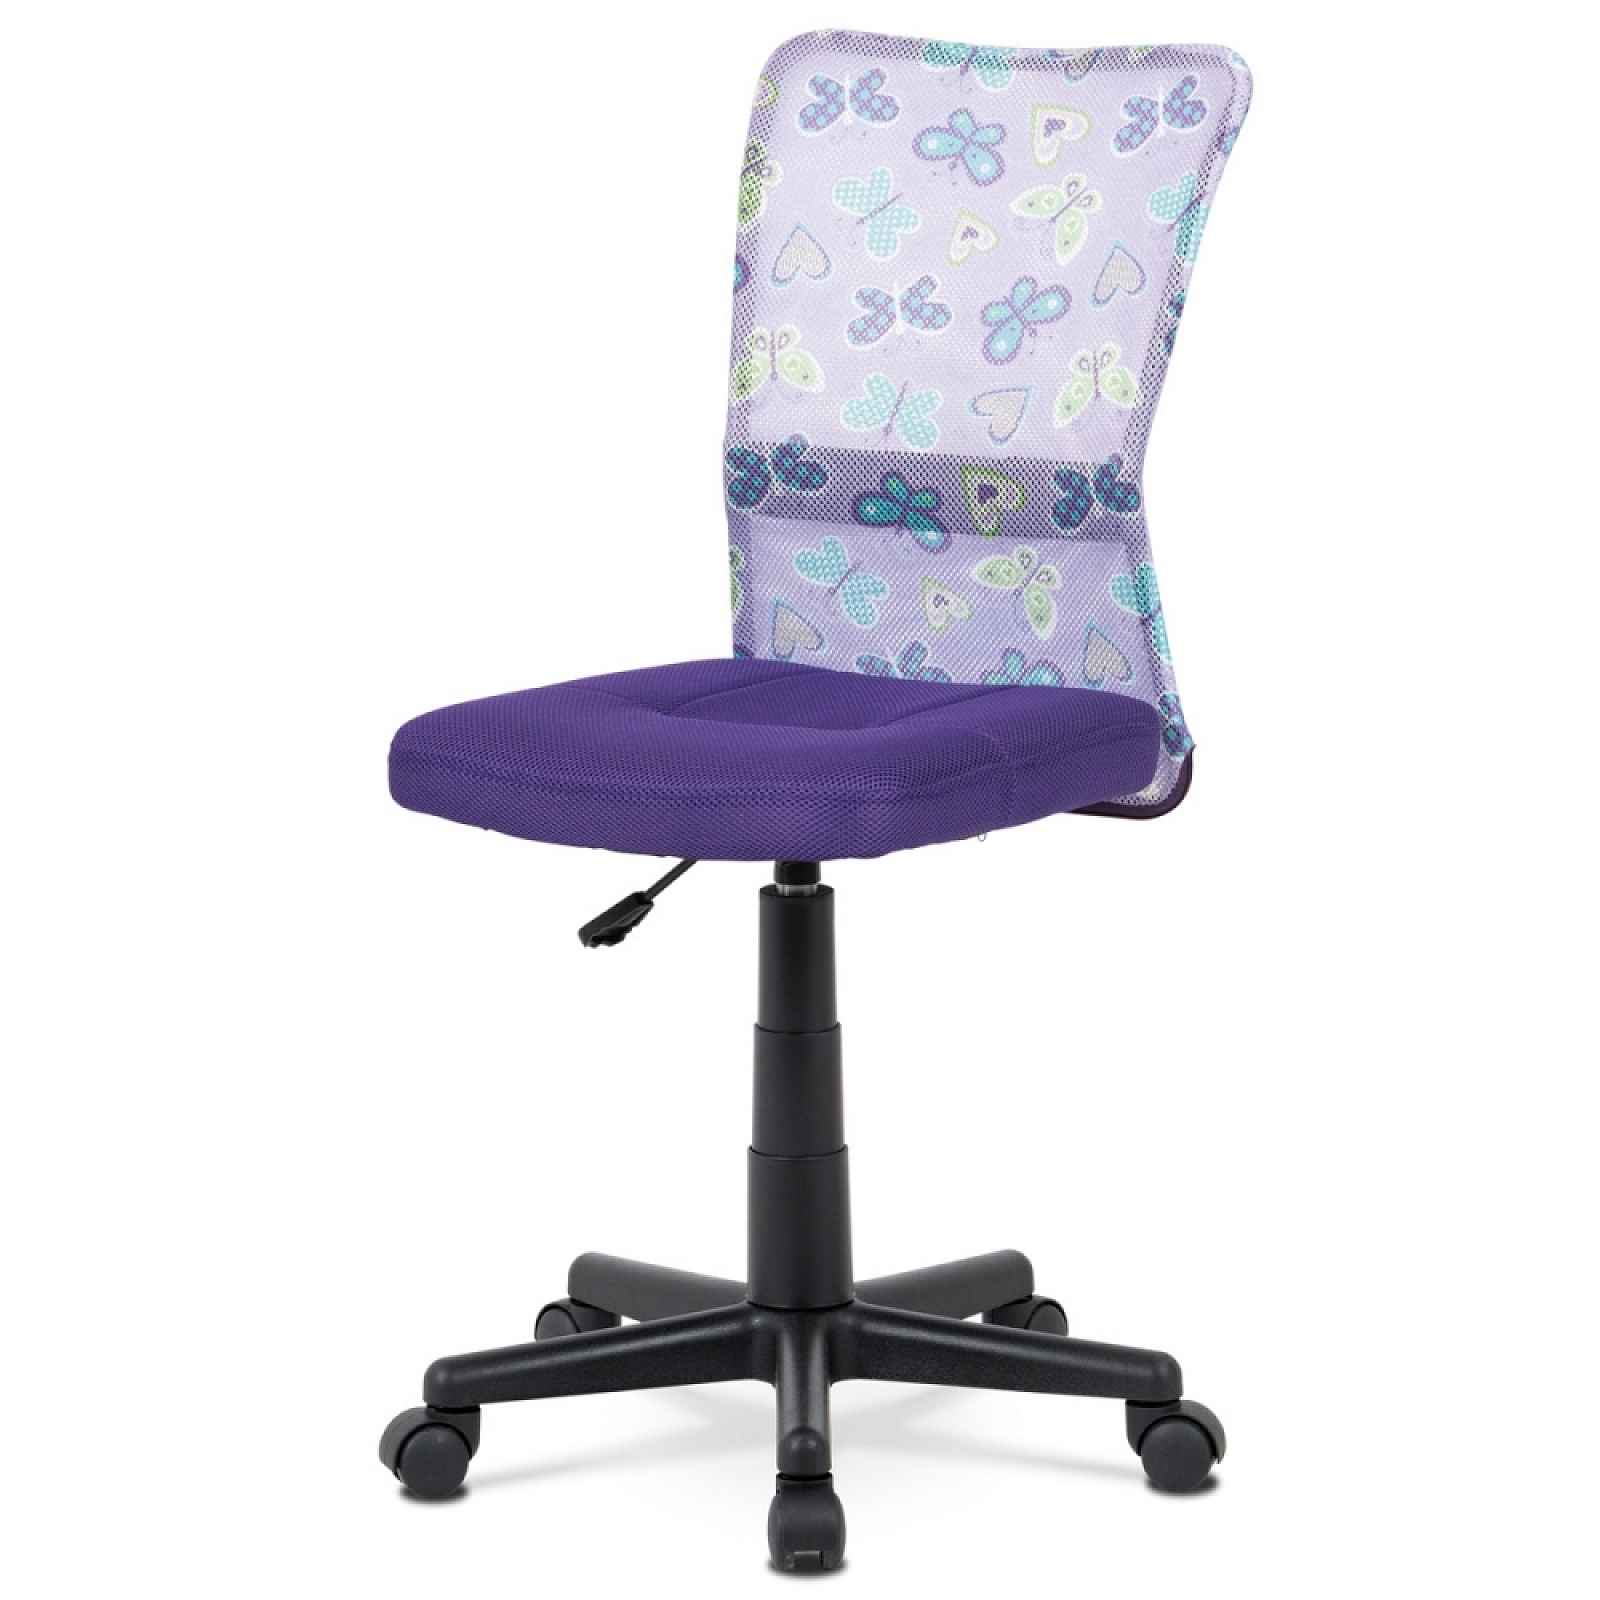 Kancelářská židle KA-2325 PUR, fialová